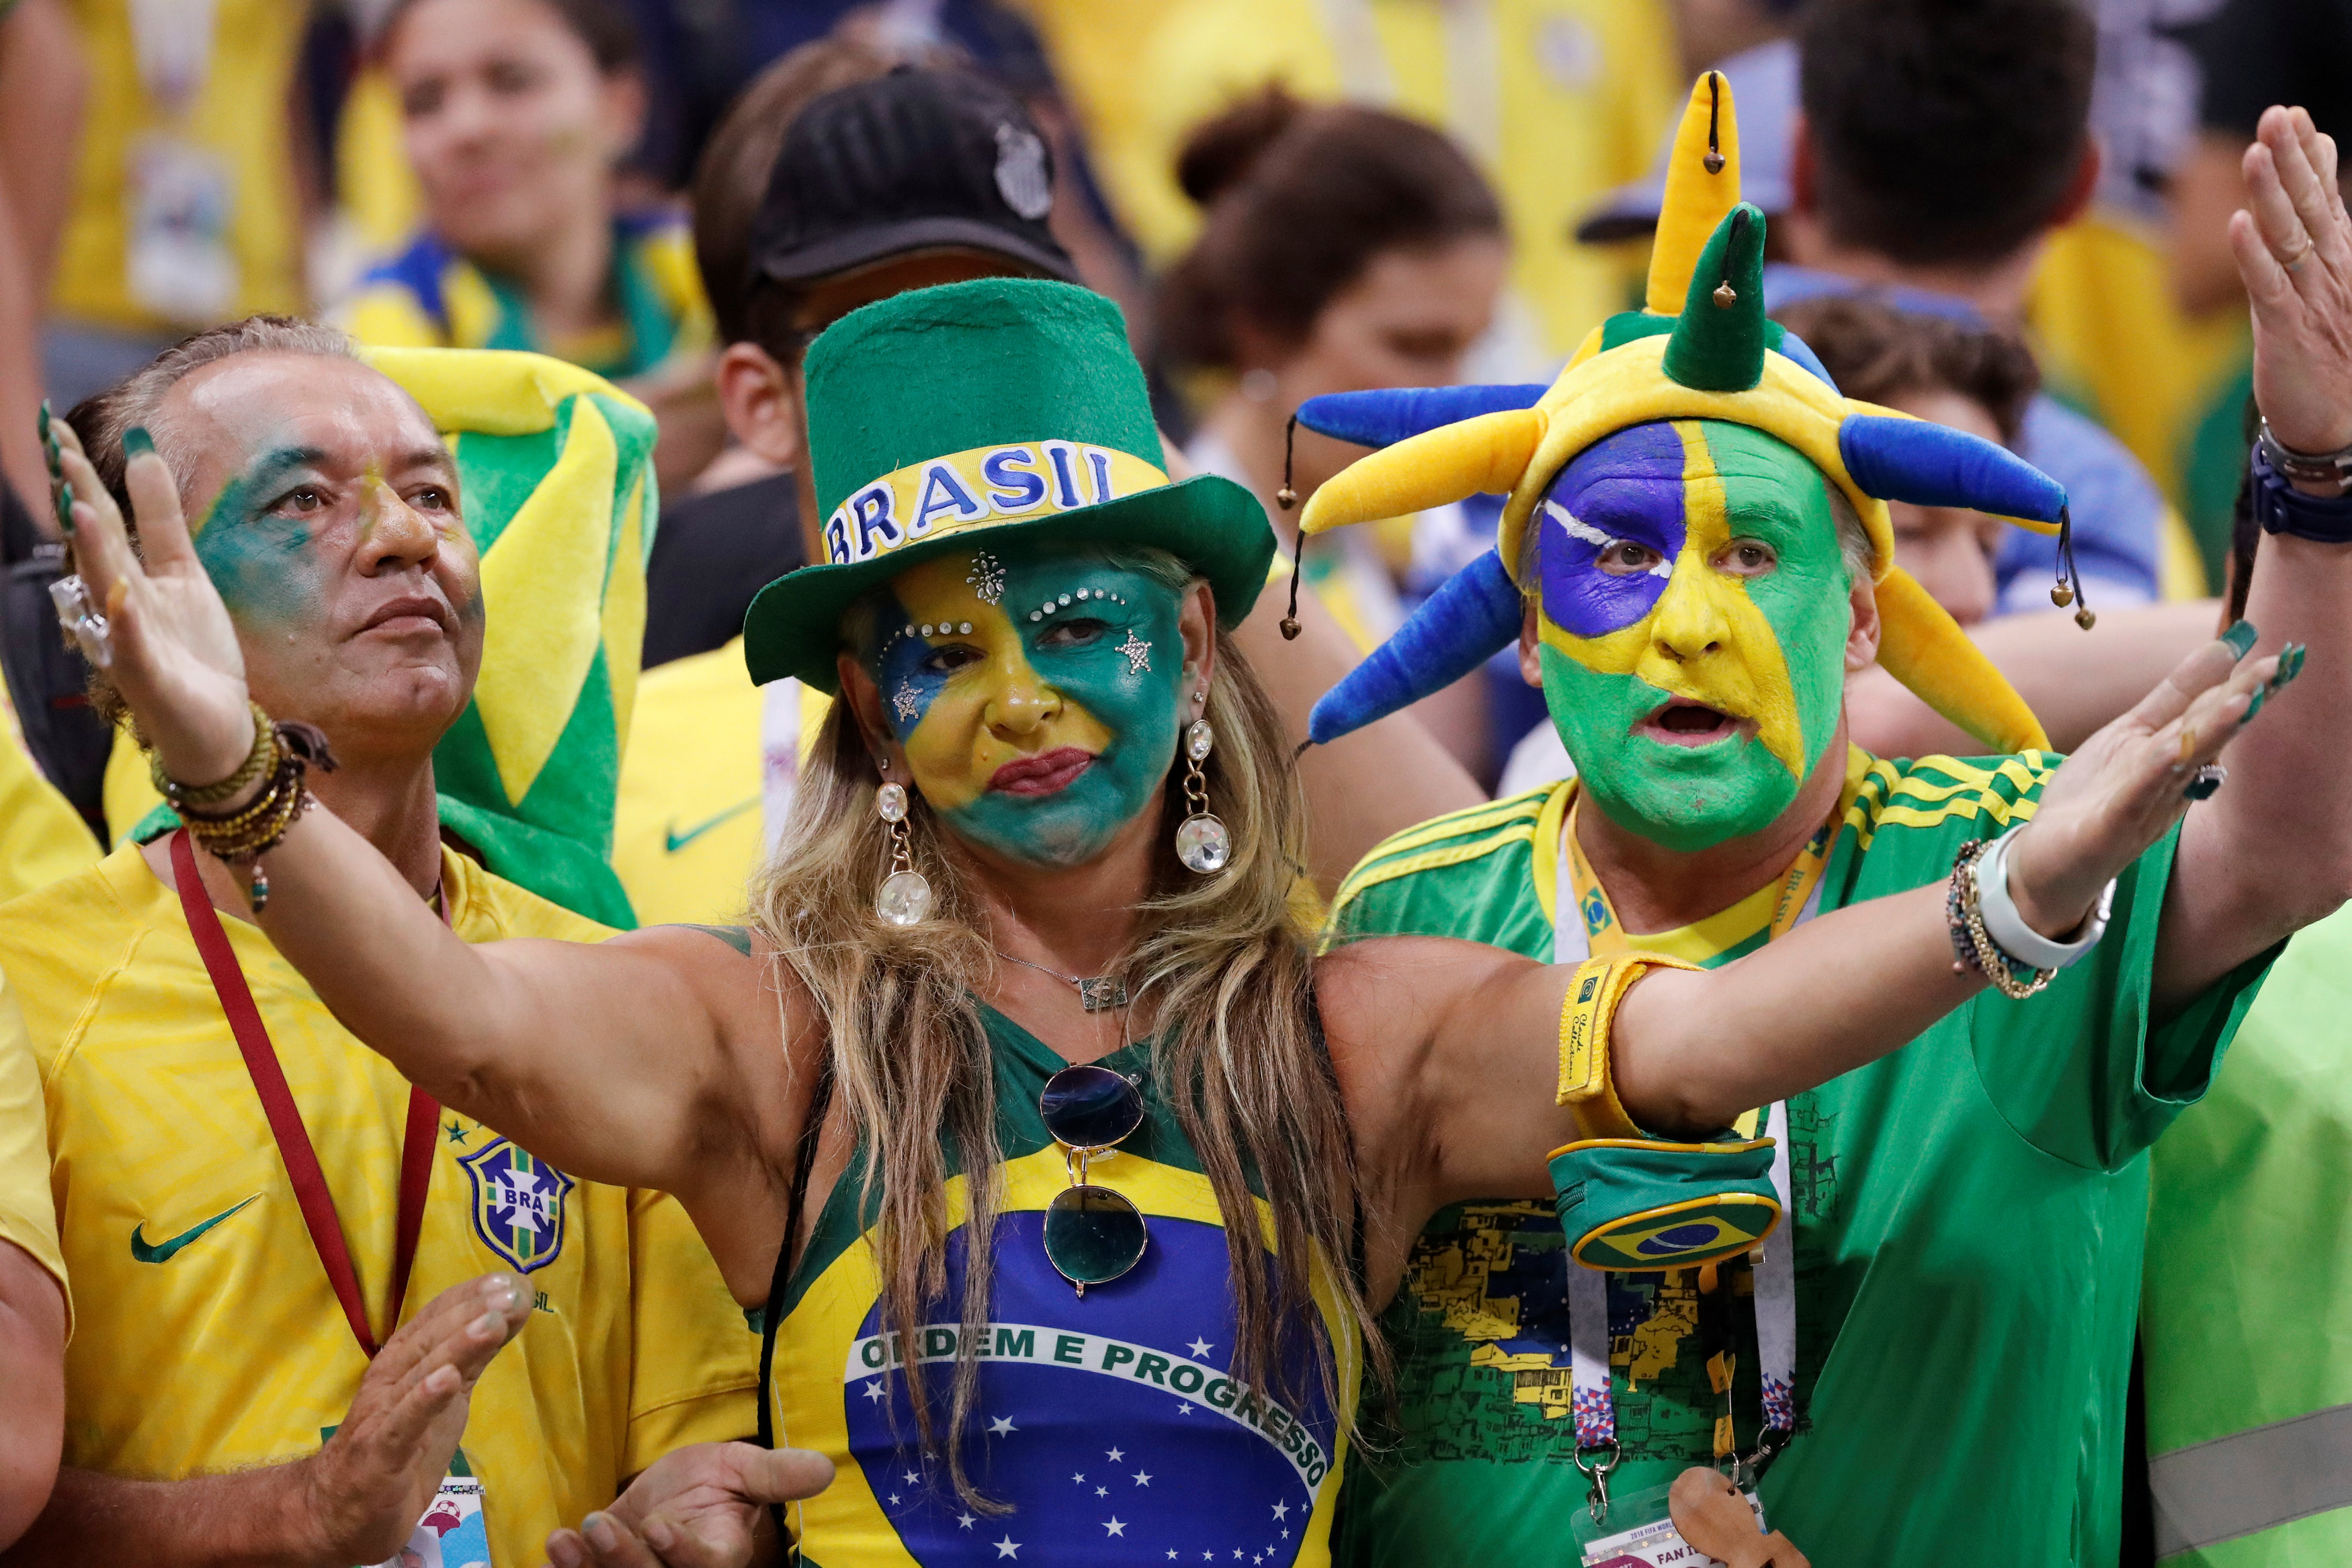 حزن الجماهير البرازيلية بعد وداع كأس العالم (5)